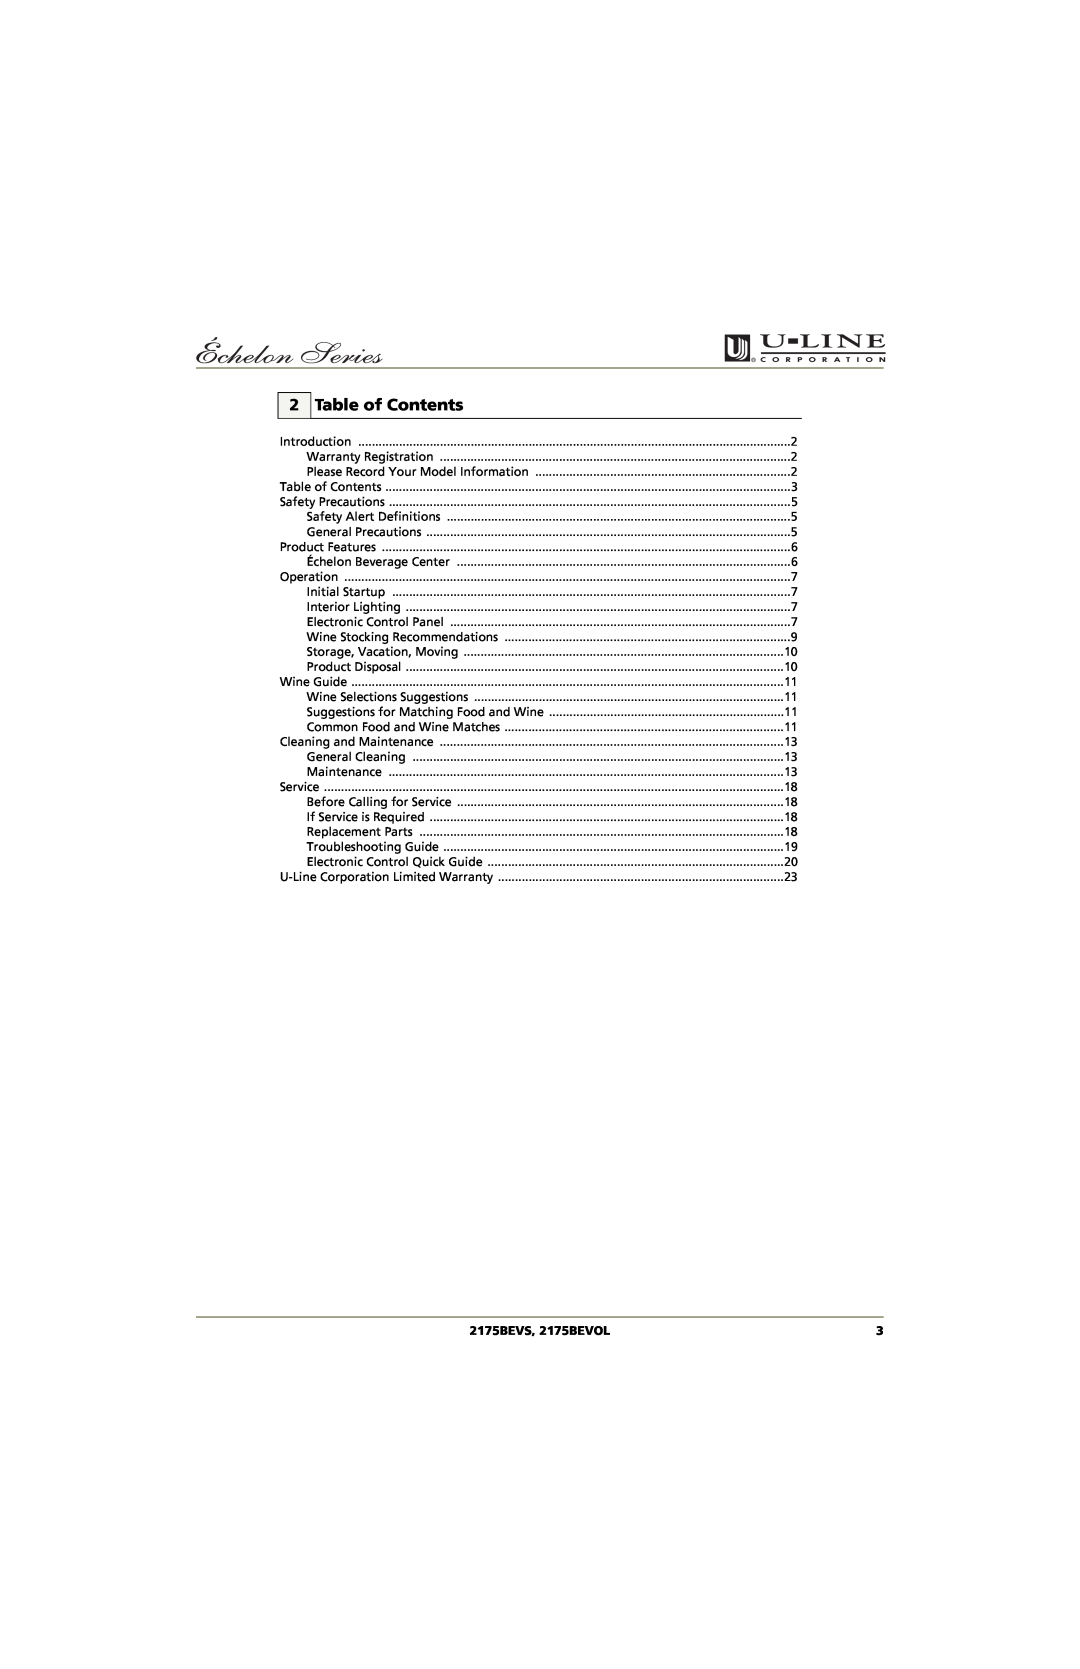 U-Line manual Table of Contents, 2175BEVS, 2175BEVOL 